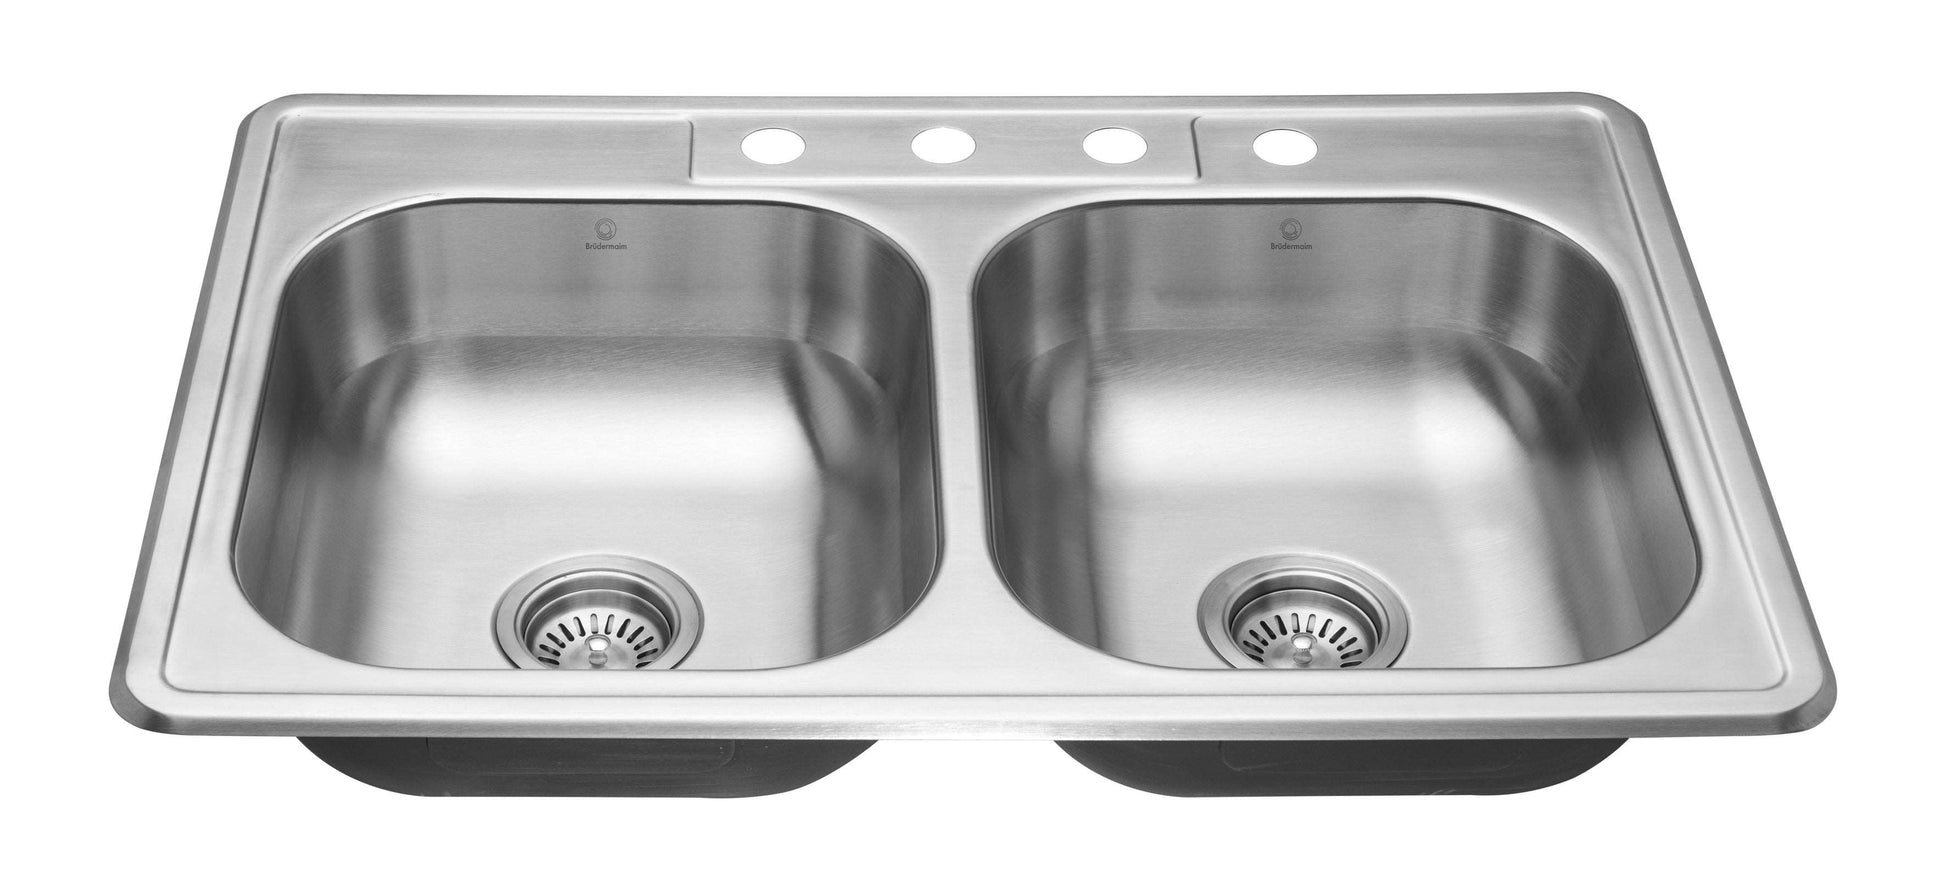 Kitchen Sink - Stainless Steel - BRUDERMAIM 33x22x6  Inch 20 gauge T304 Stainless Steel Drop In Kitchen Sink Doble Bowl.